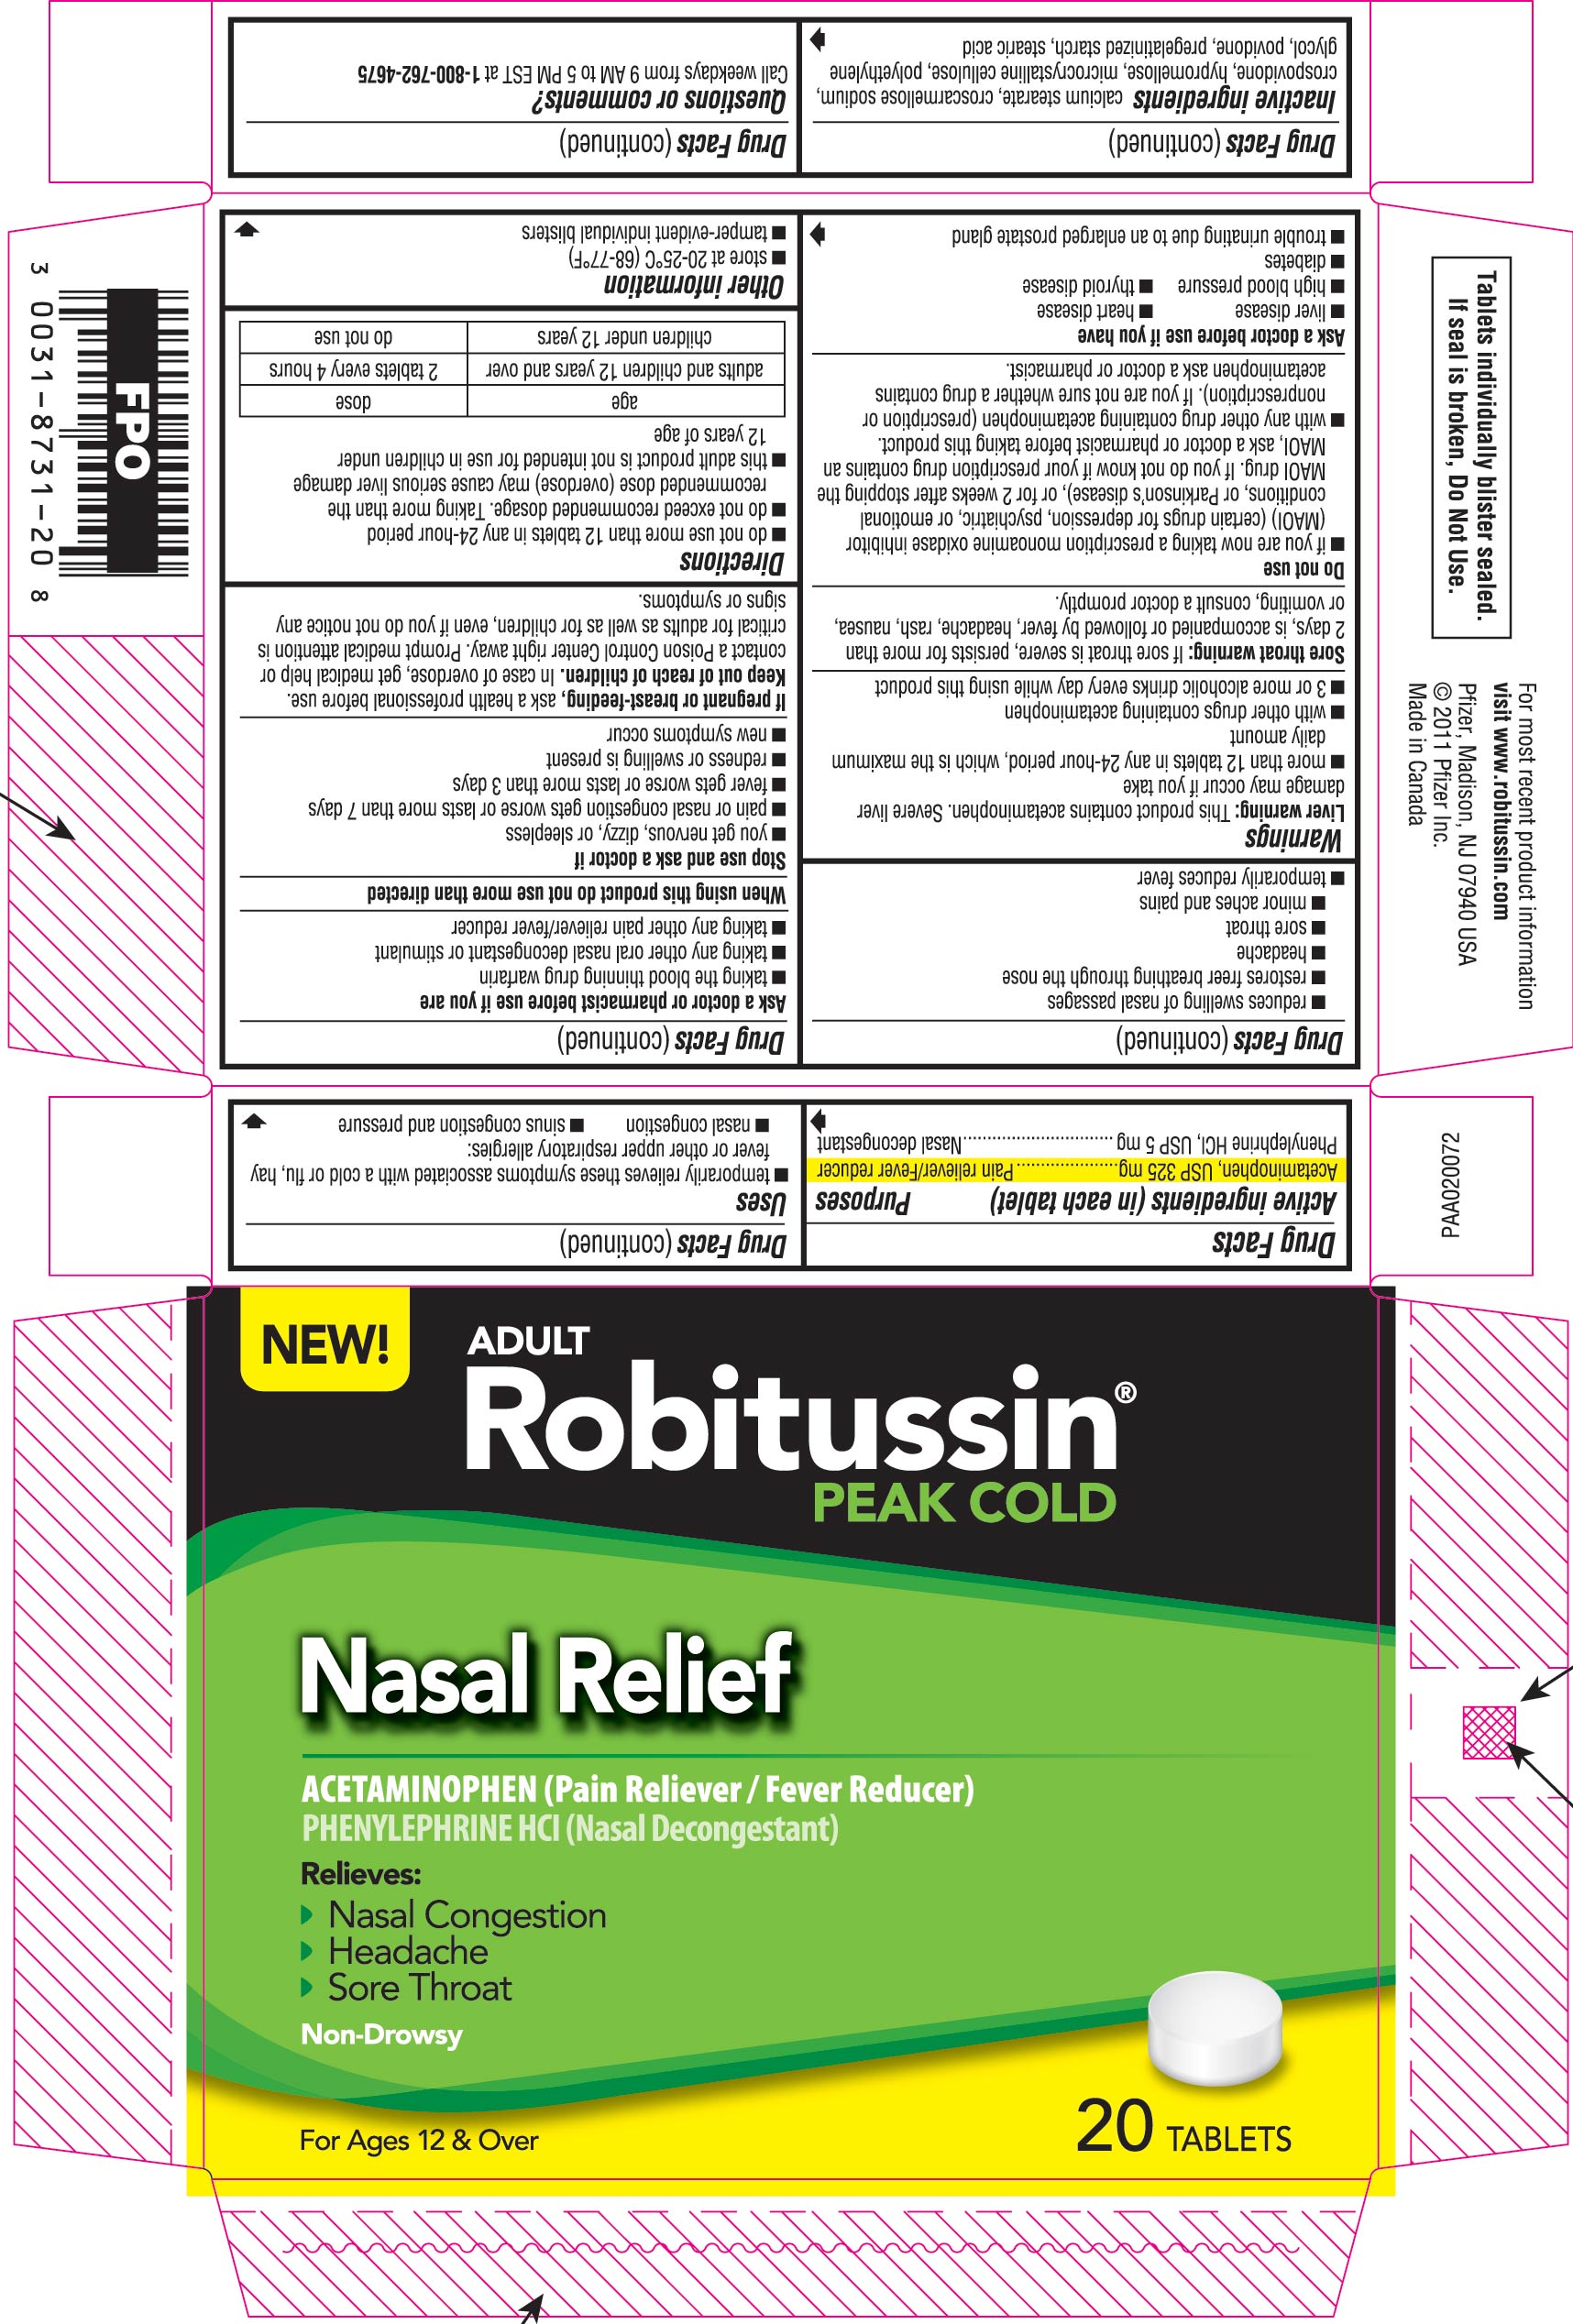 Robitussin Peak Cold Nasal Relief Packaging